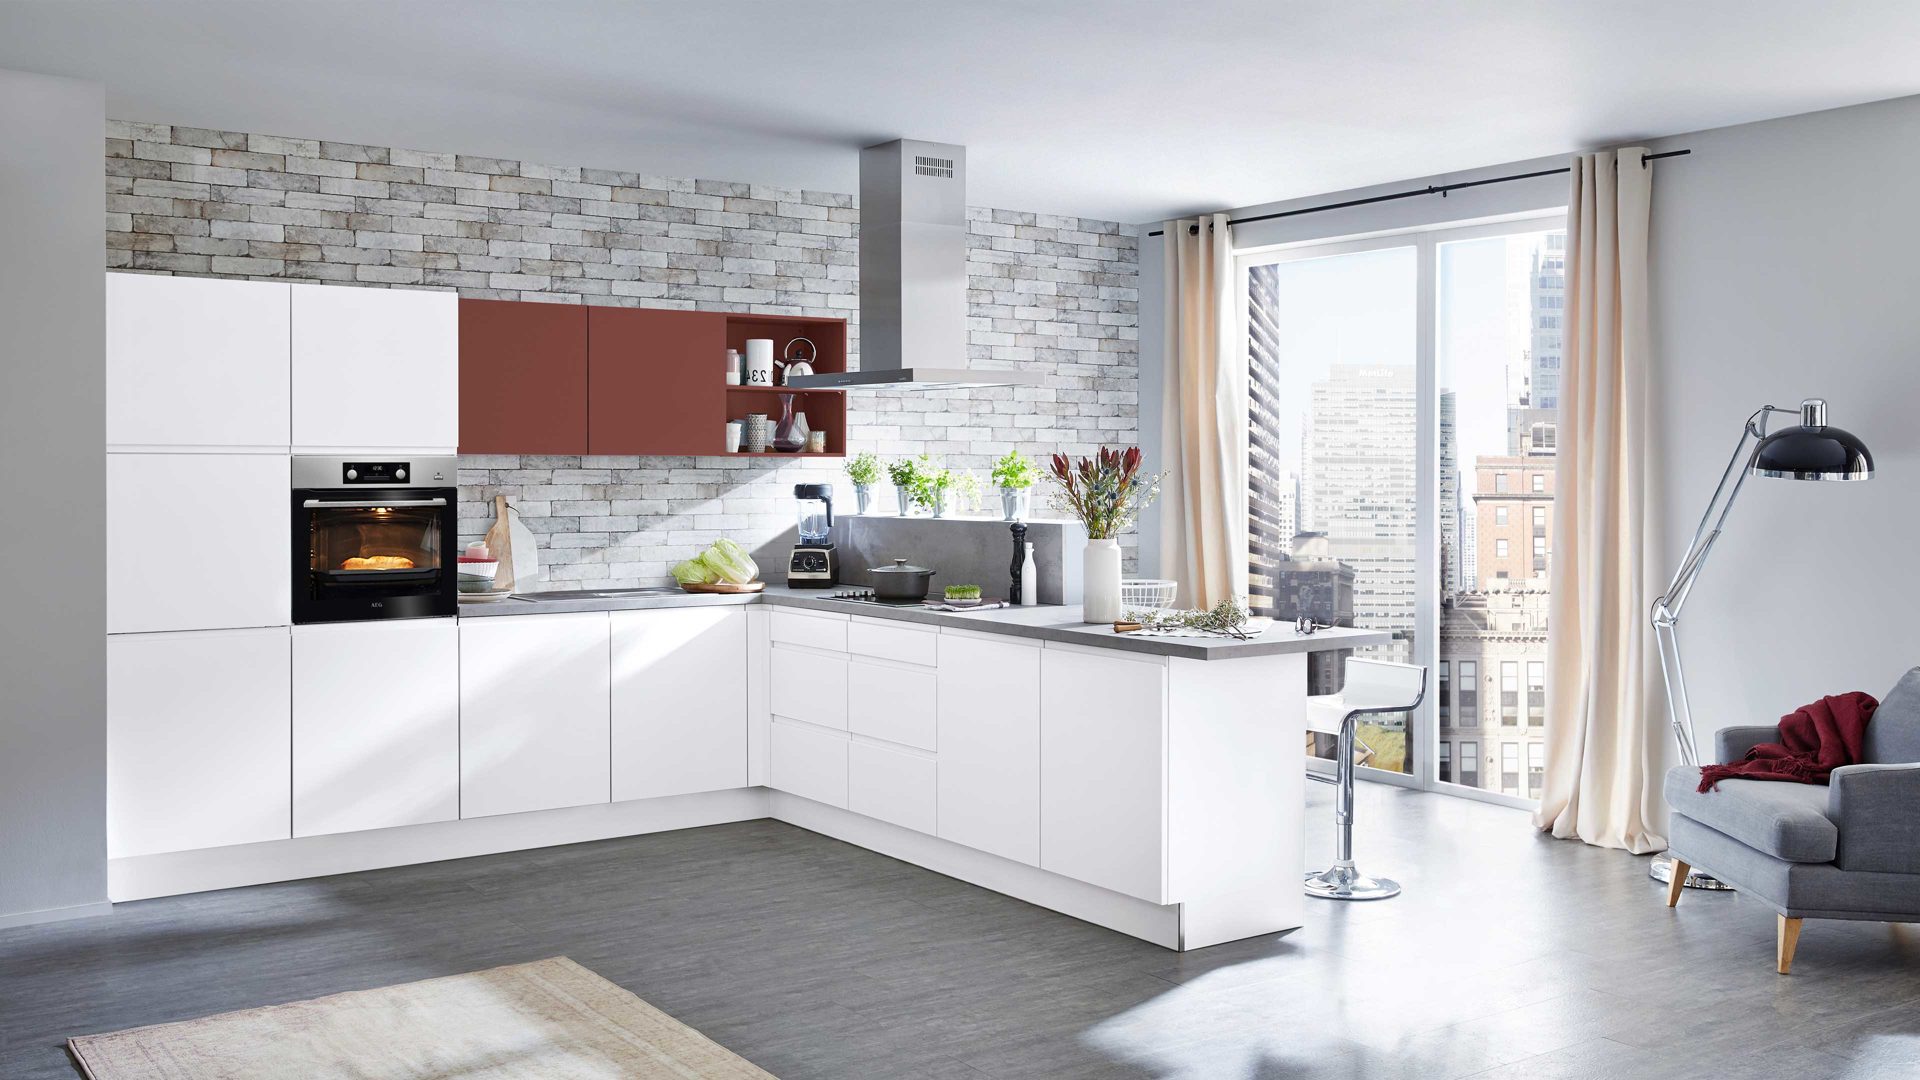 Einbauküche Nolte® küchen aus Holz in Weiß nolte® Einbauküche Sigma mit AEG-Einbaugeräten Weiß, Hennarot & Beton – Stellfläche ca. 325 x 325 cm